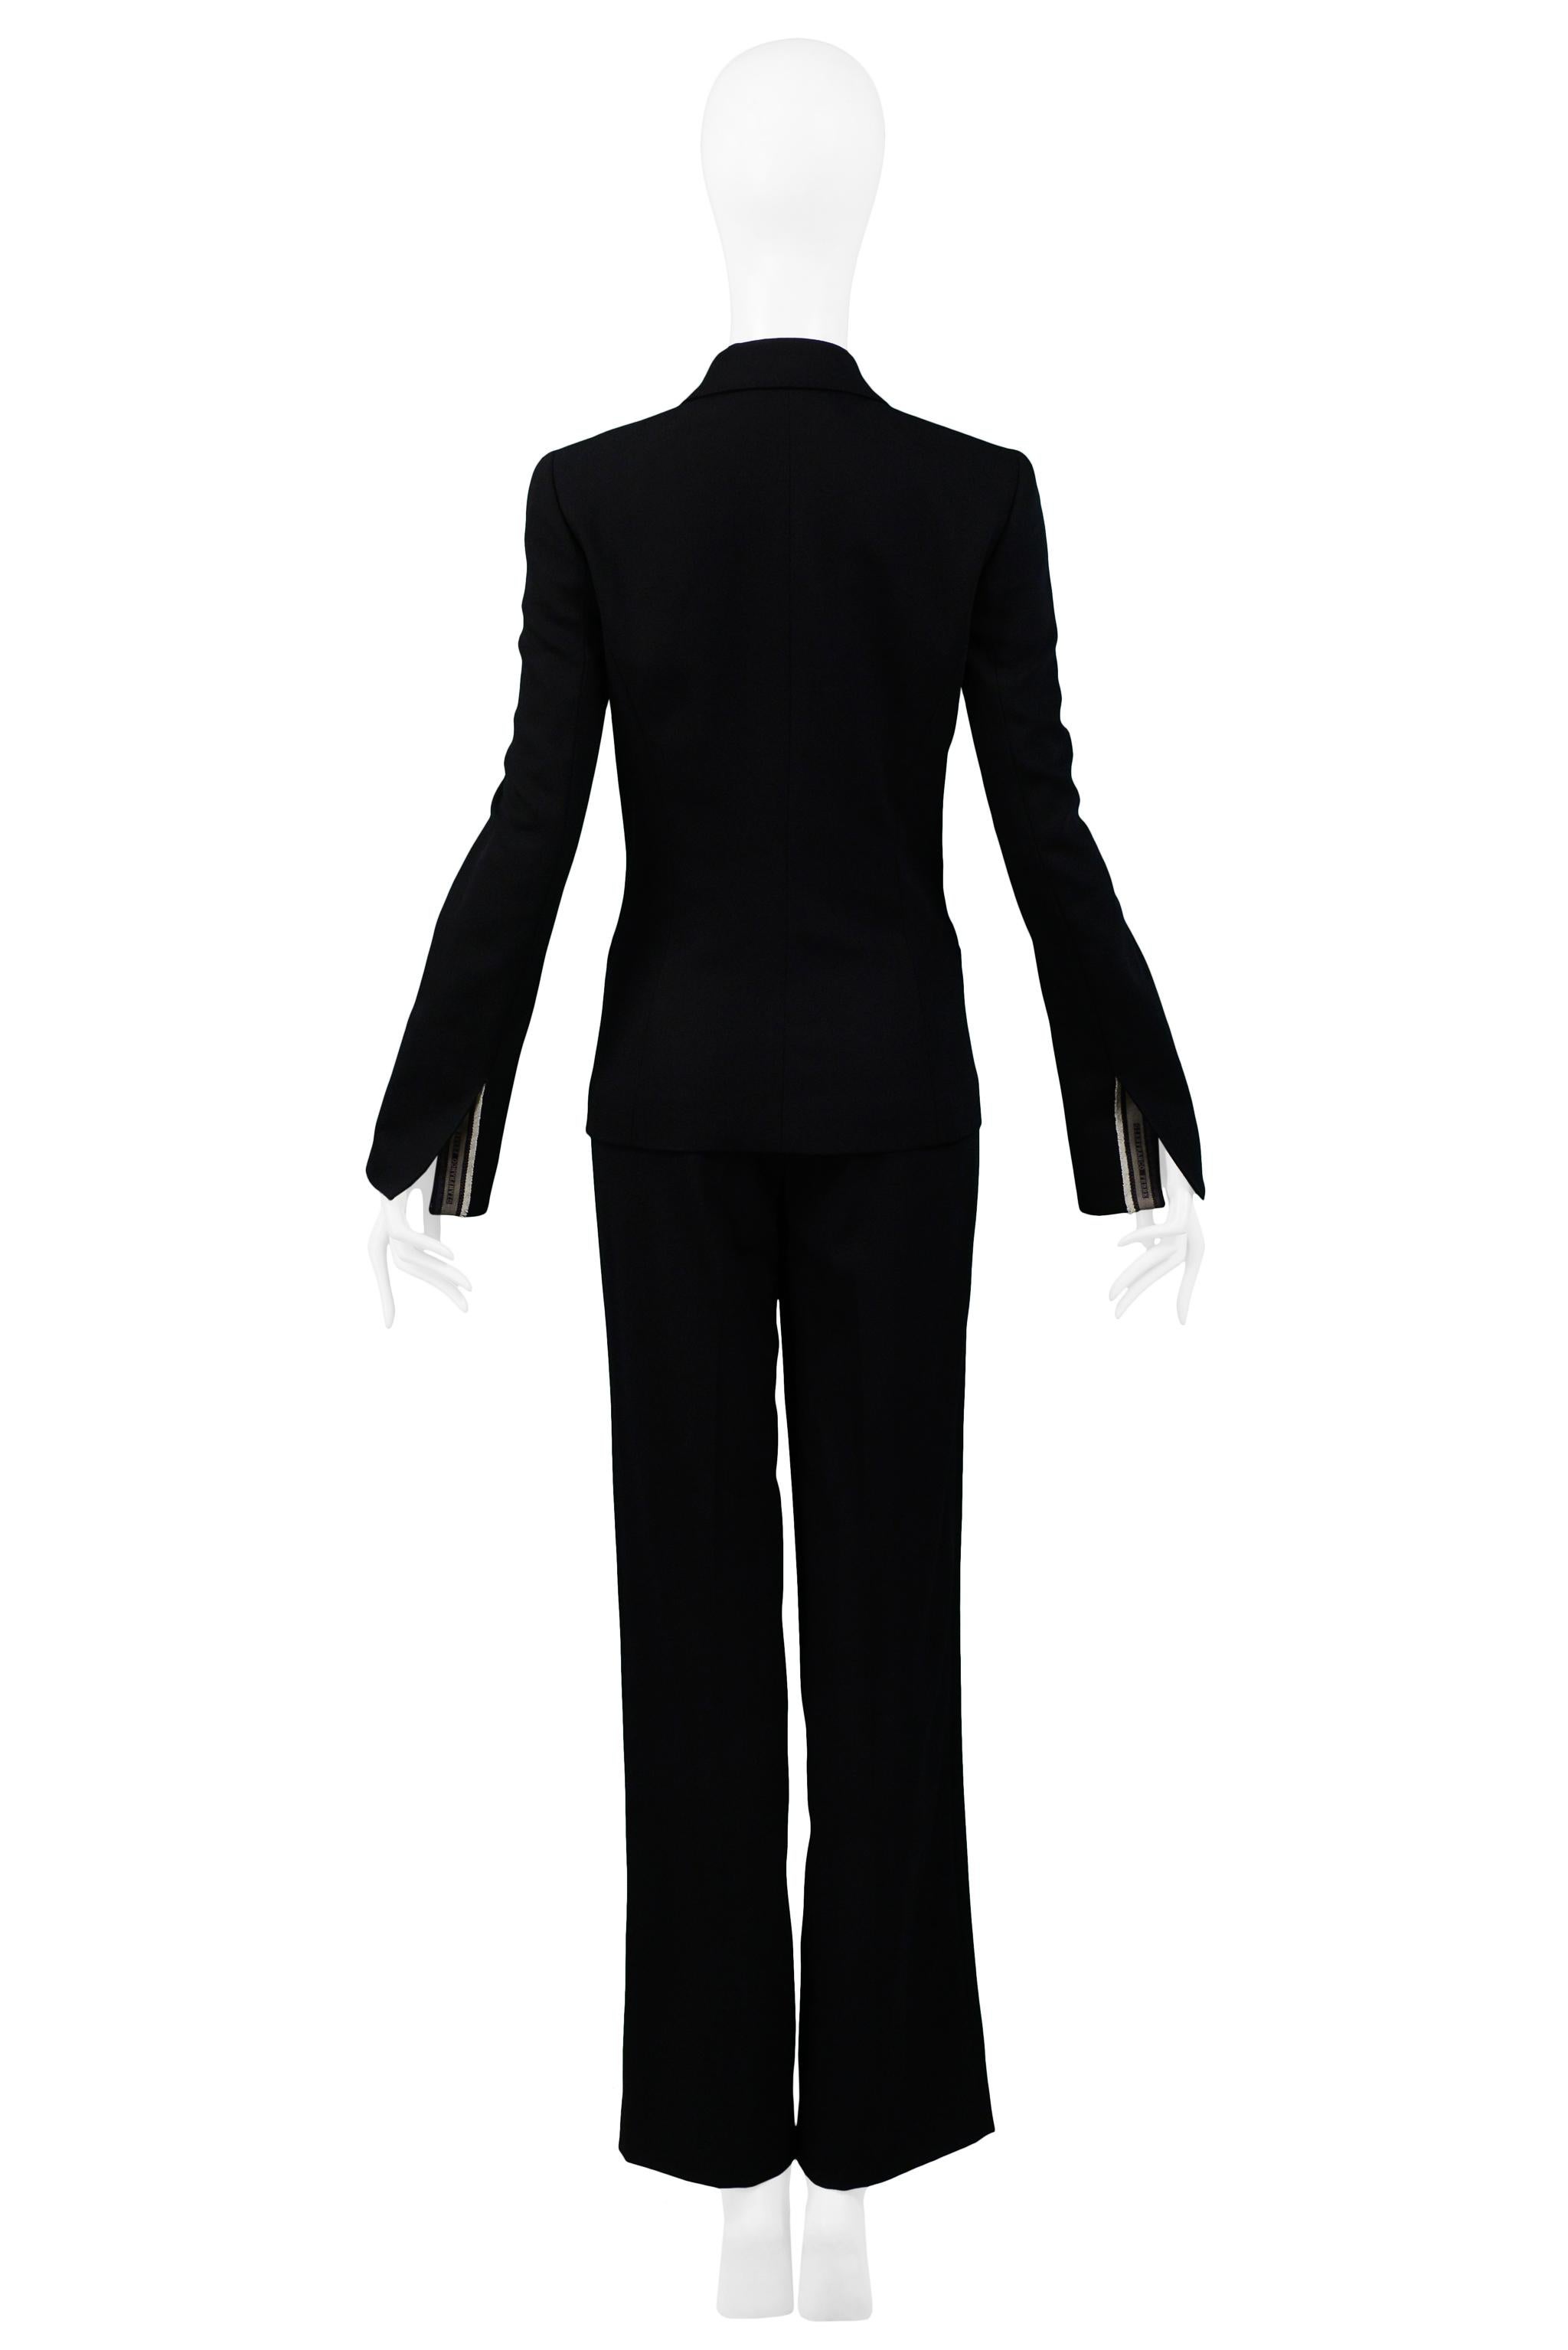 Gianfranco FerrecClassic Black Tailored Suit For Sale 1